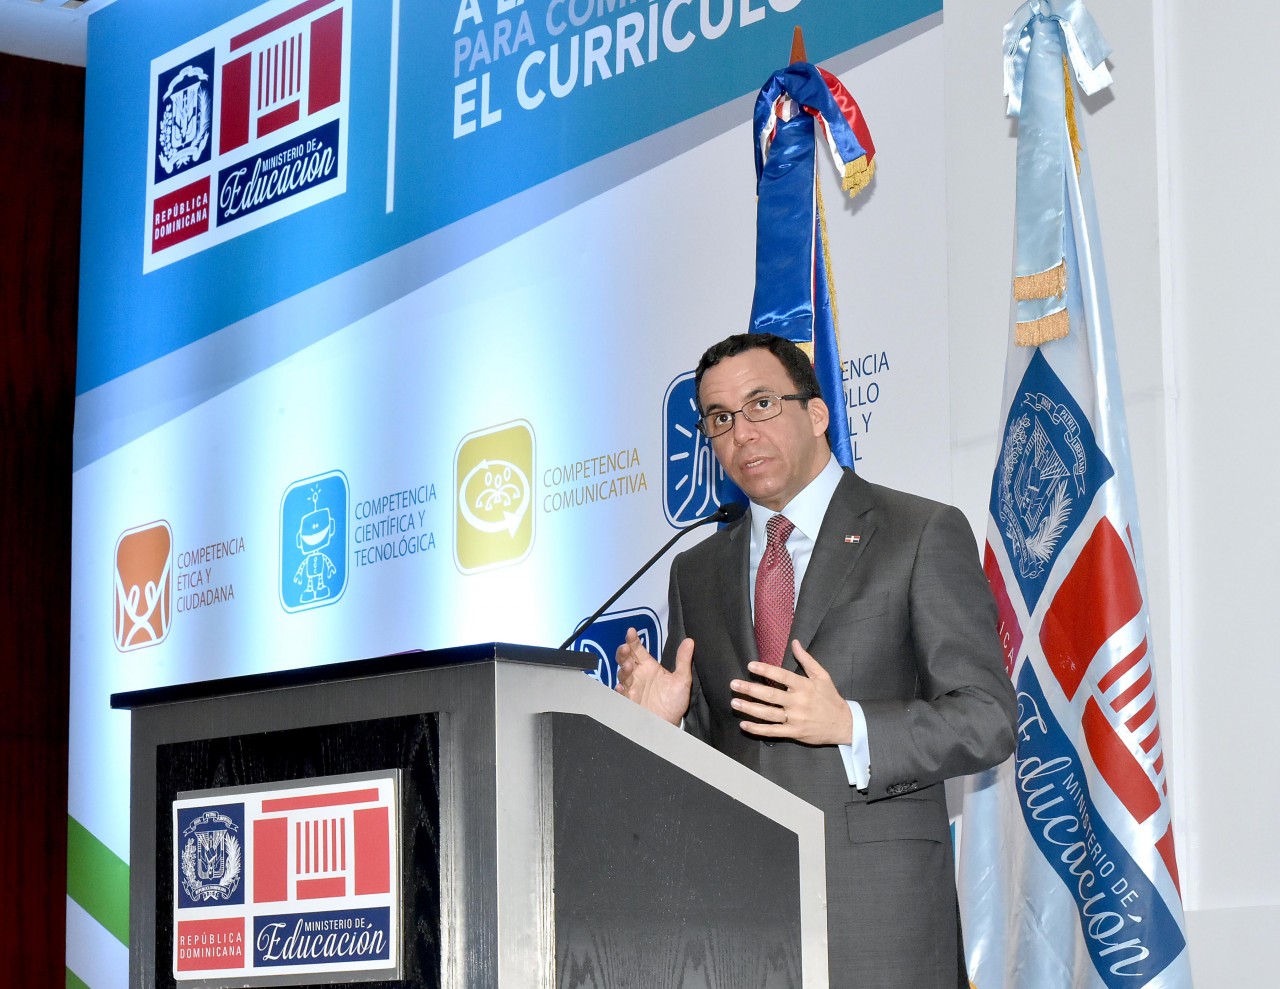  imagen Ministro Andrés Navarro en podium presentando el programa del Nuevo Currículo Escolar  